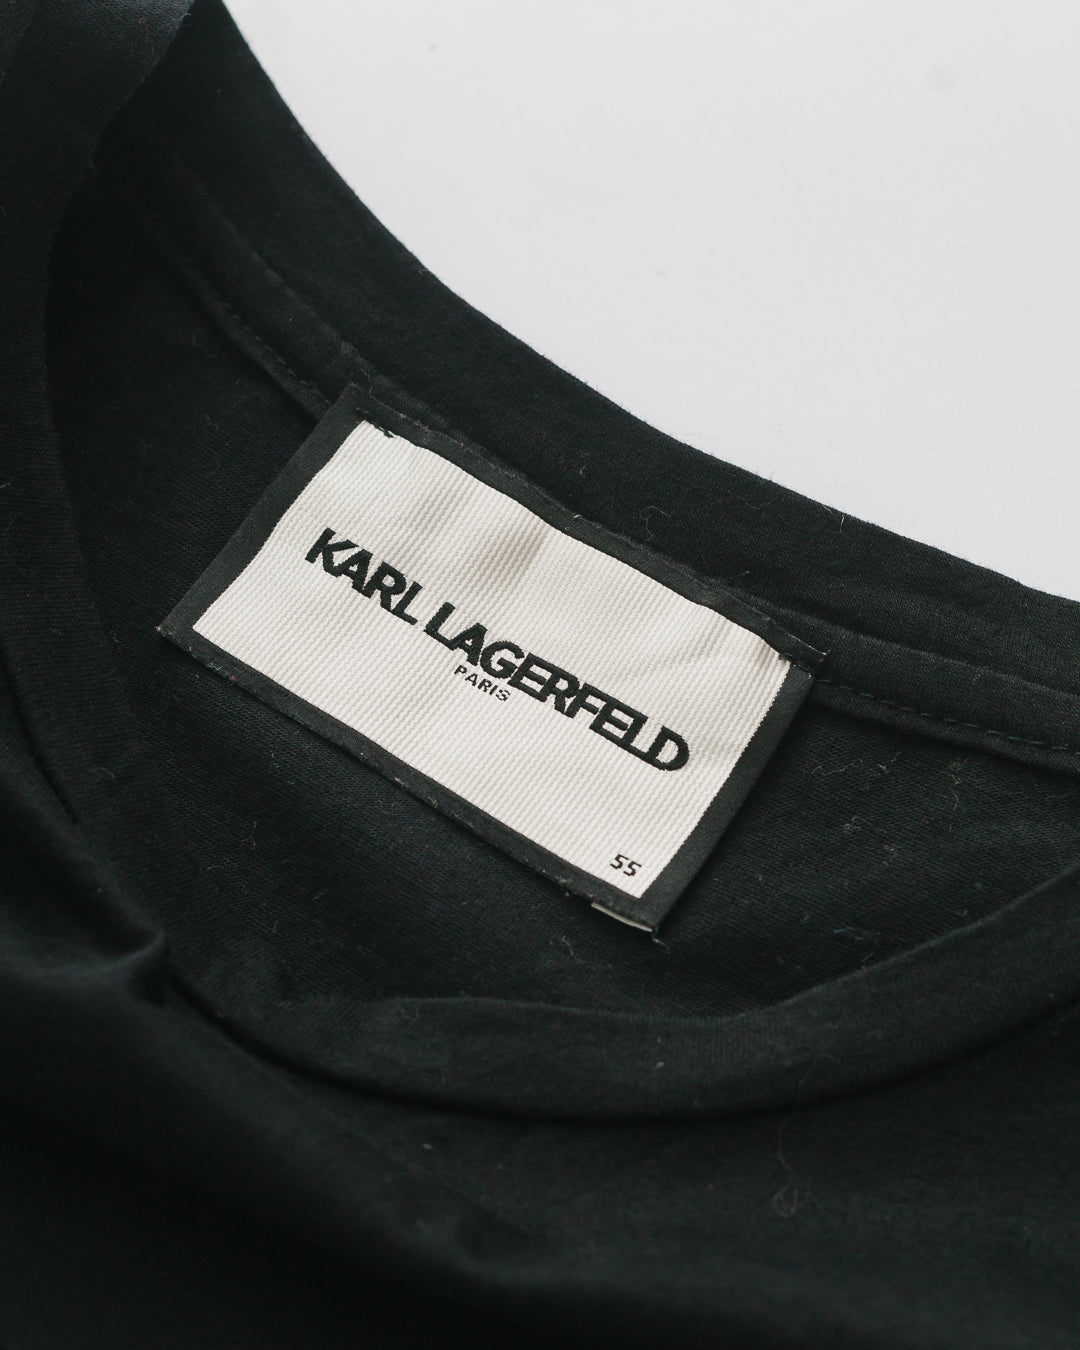 Karl Lagerfeld Embellished Tshirt